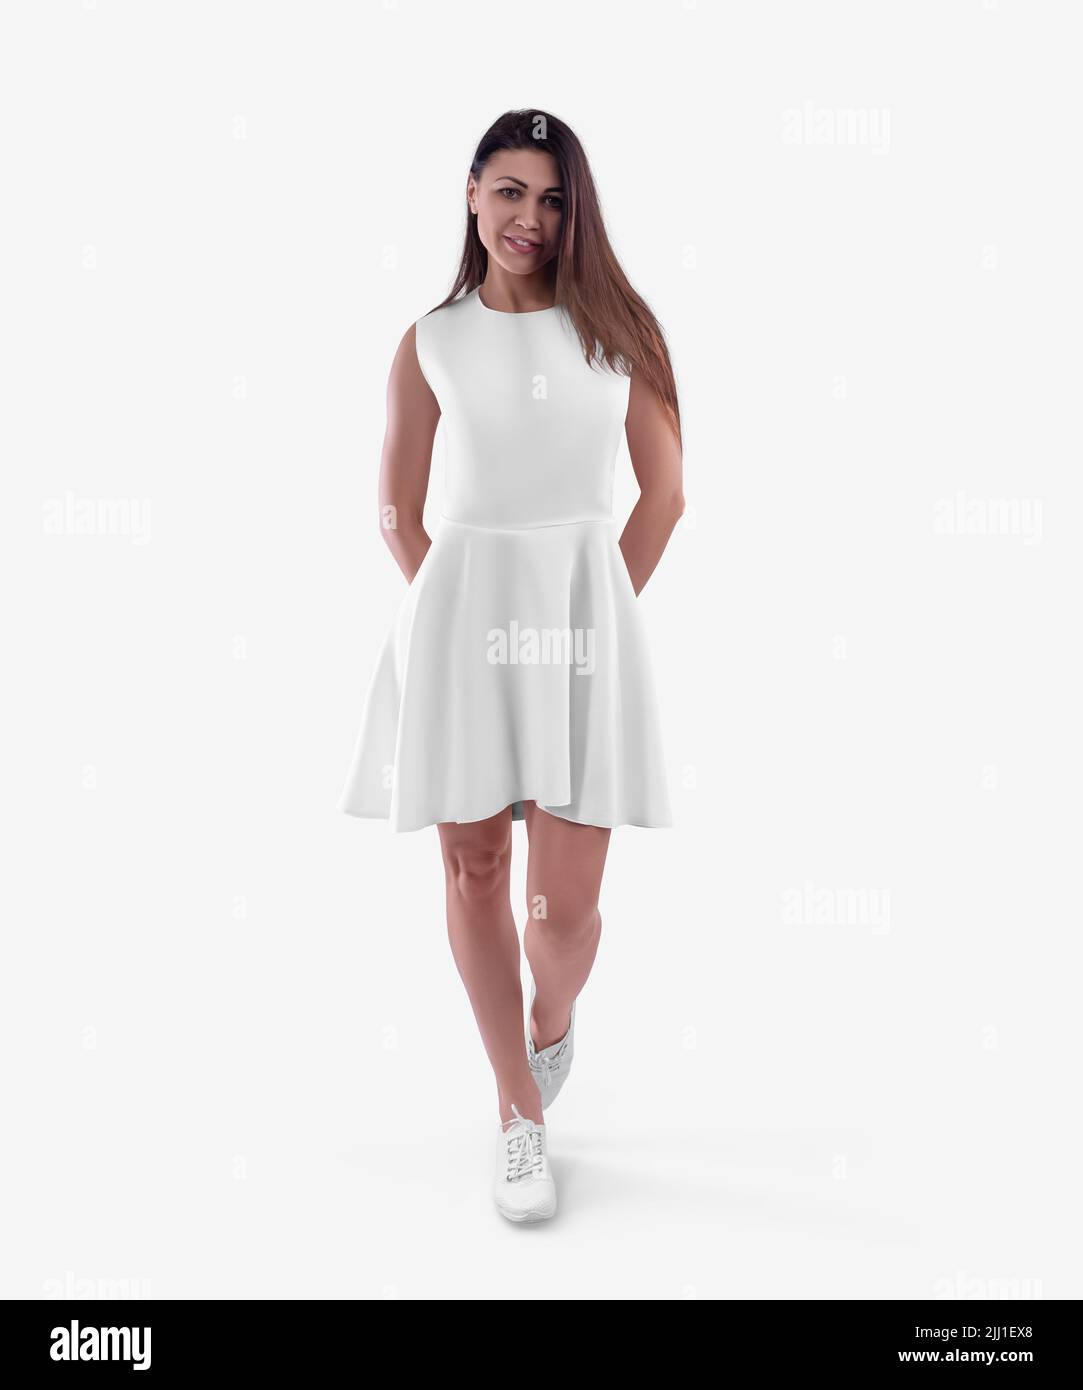 Weißes kleid Ausgeschnittene Stockfotos und -bilder - Seite 2 - Alamy